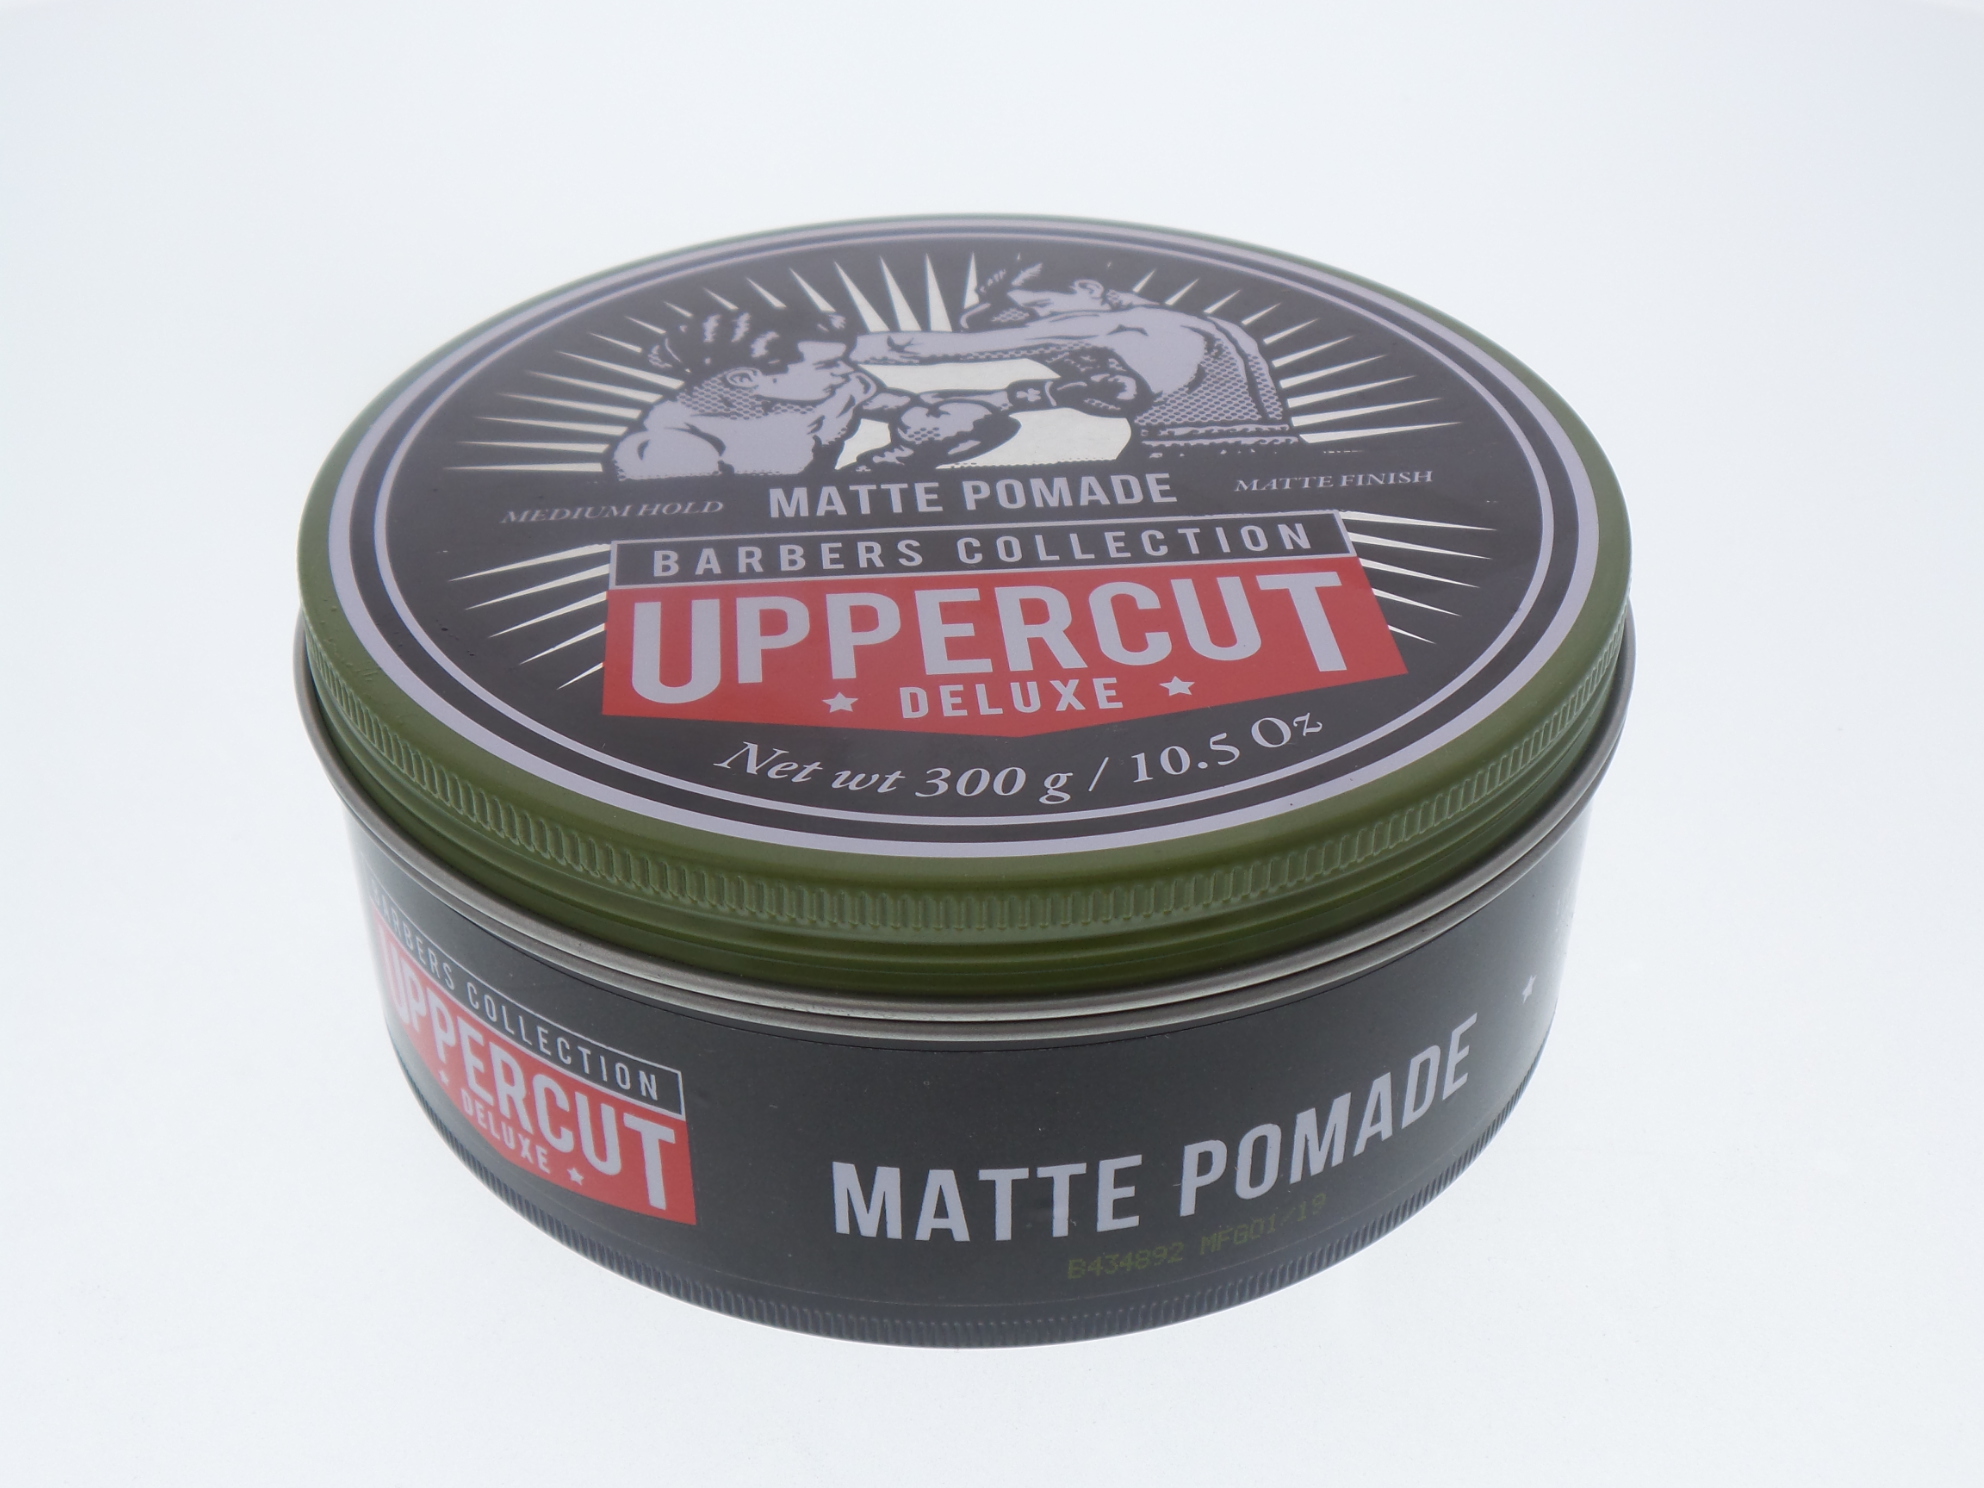 Uppercut Deluxe Matt Pomade, 10.5 oz | eBay